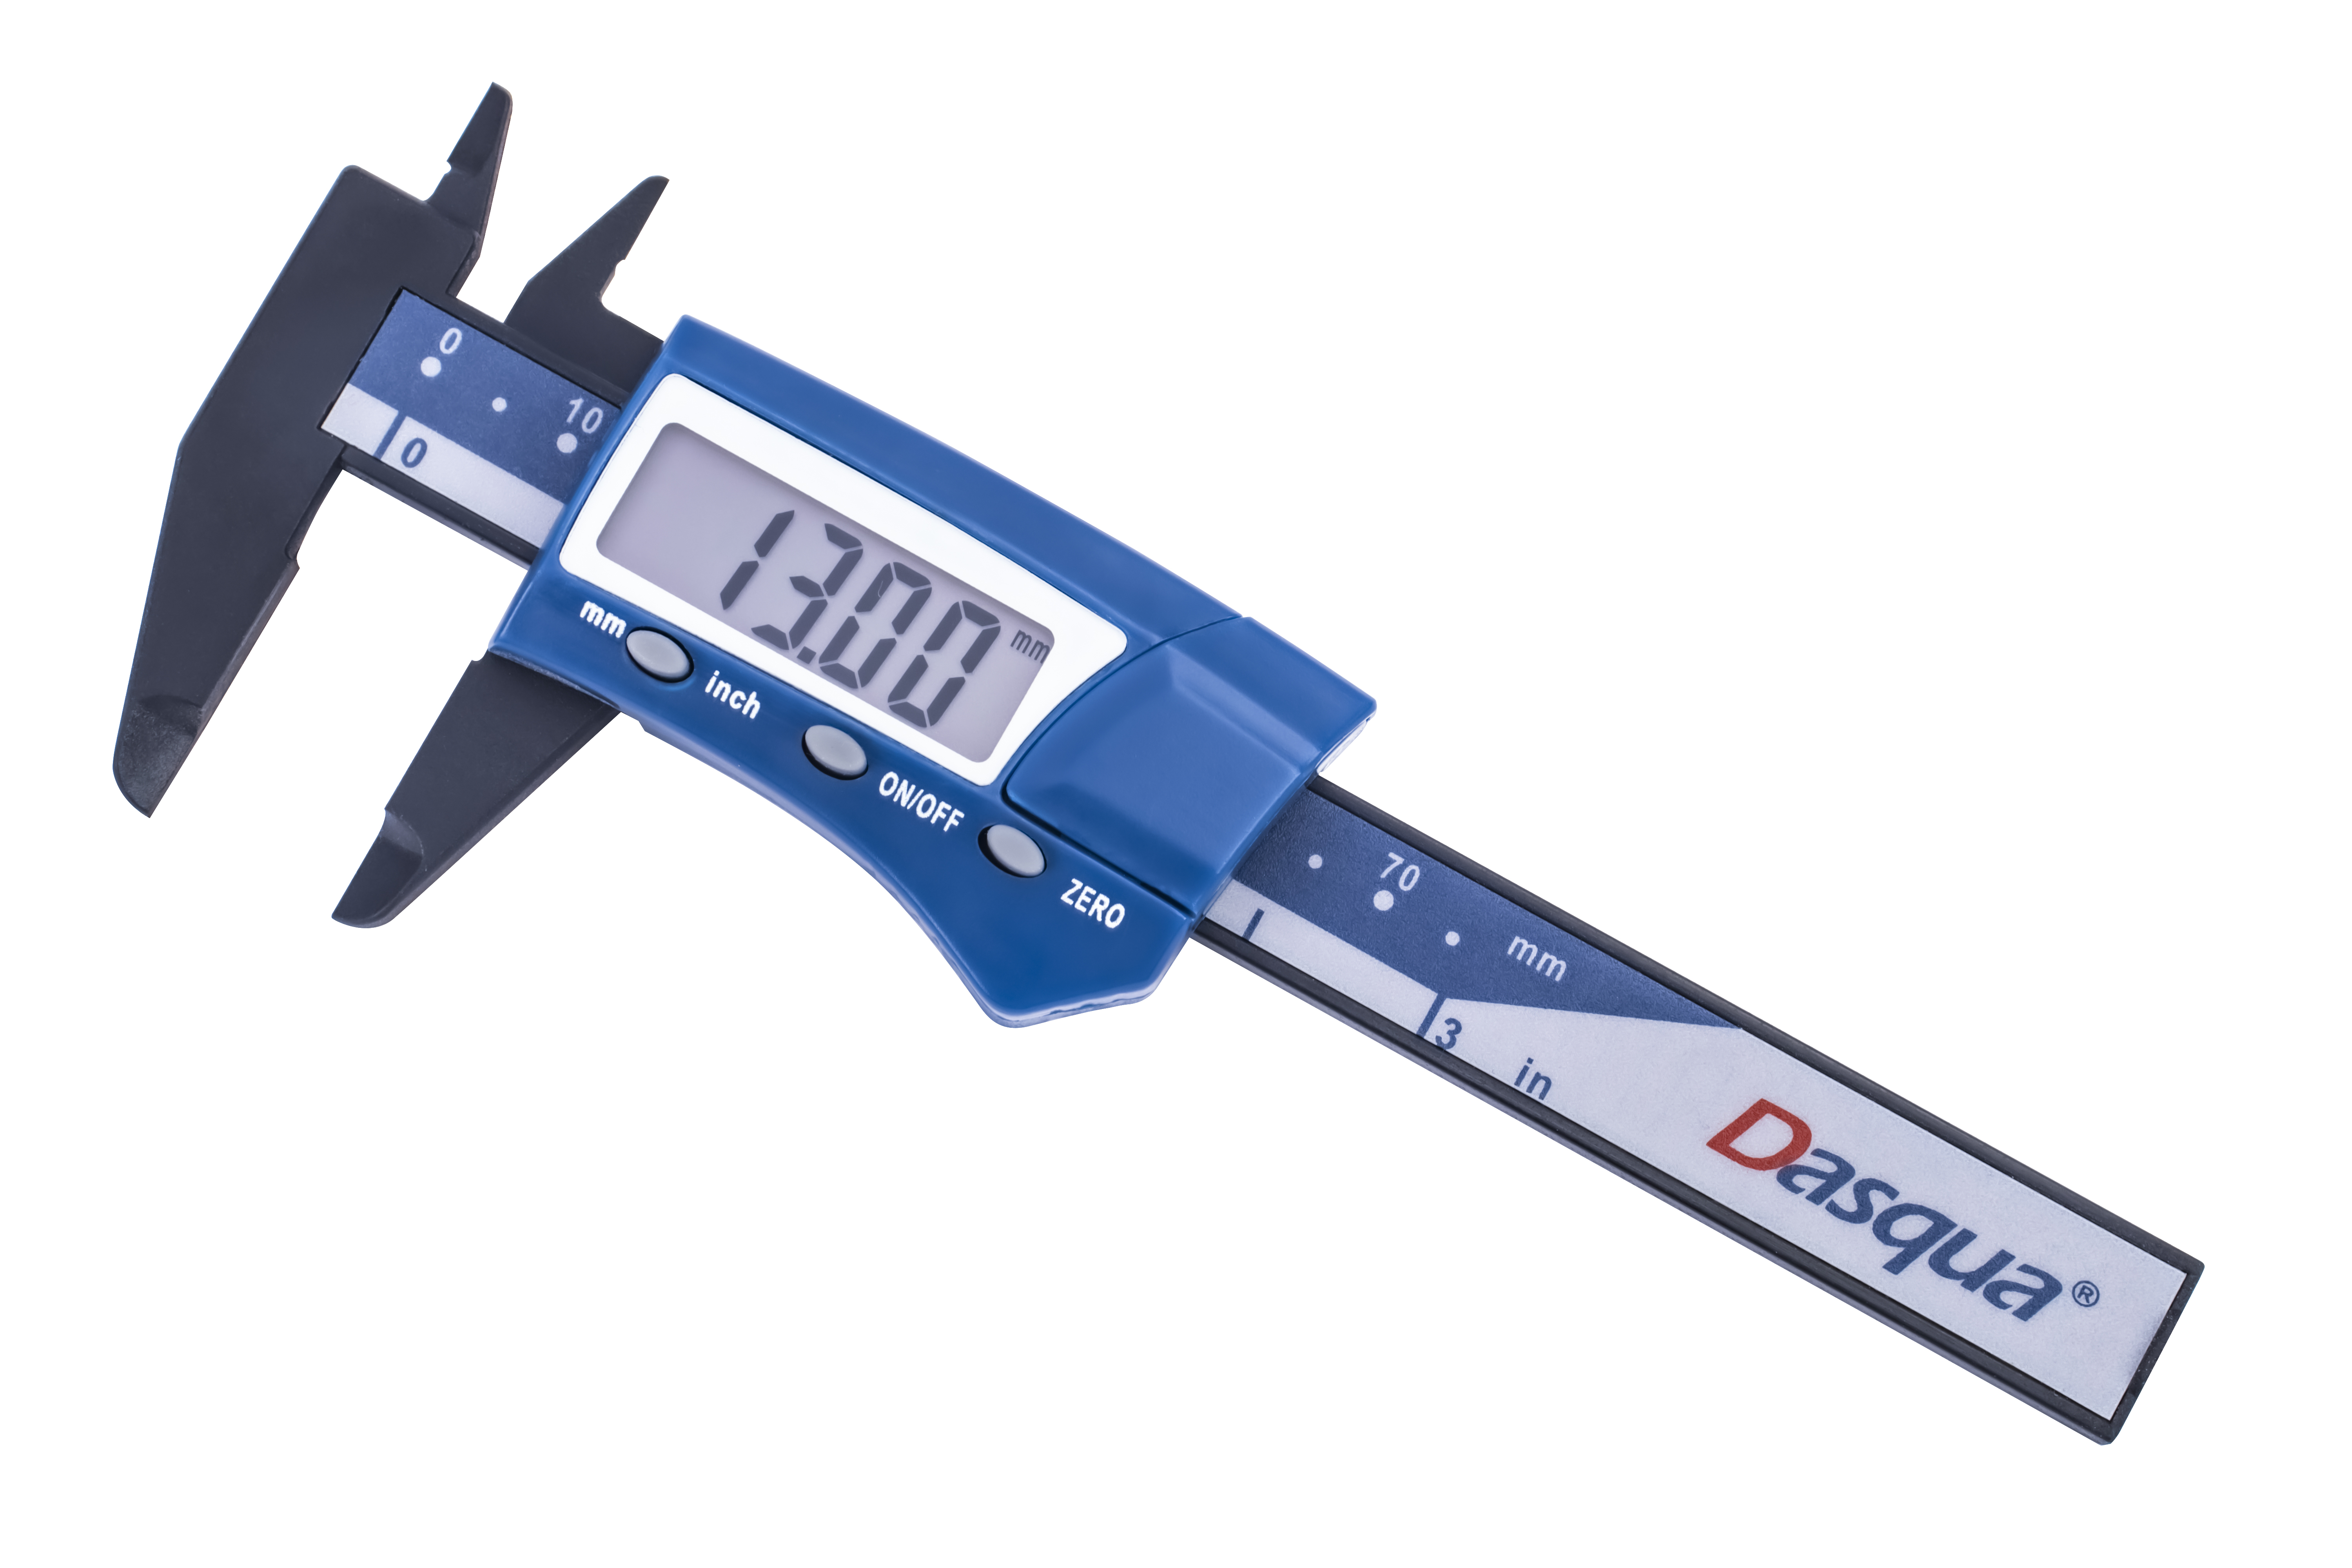 Dasqua 2035-0004 Digitaler Messschieber aus Kunststoff – leichtes und genaues Messwerkzeug für Präzisionsarbeiten